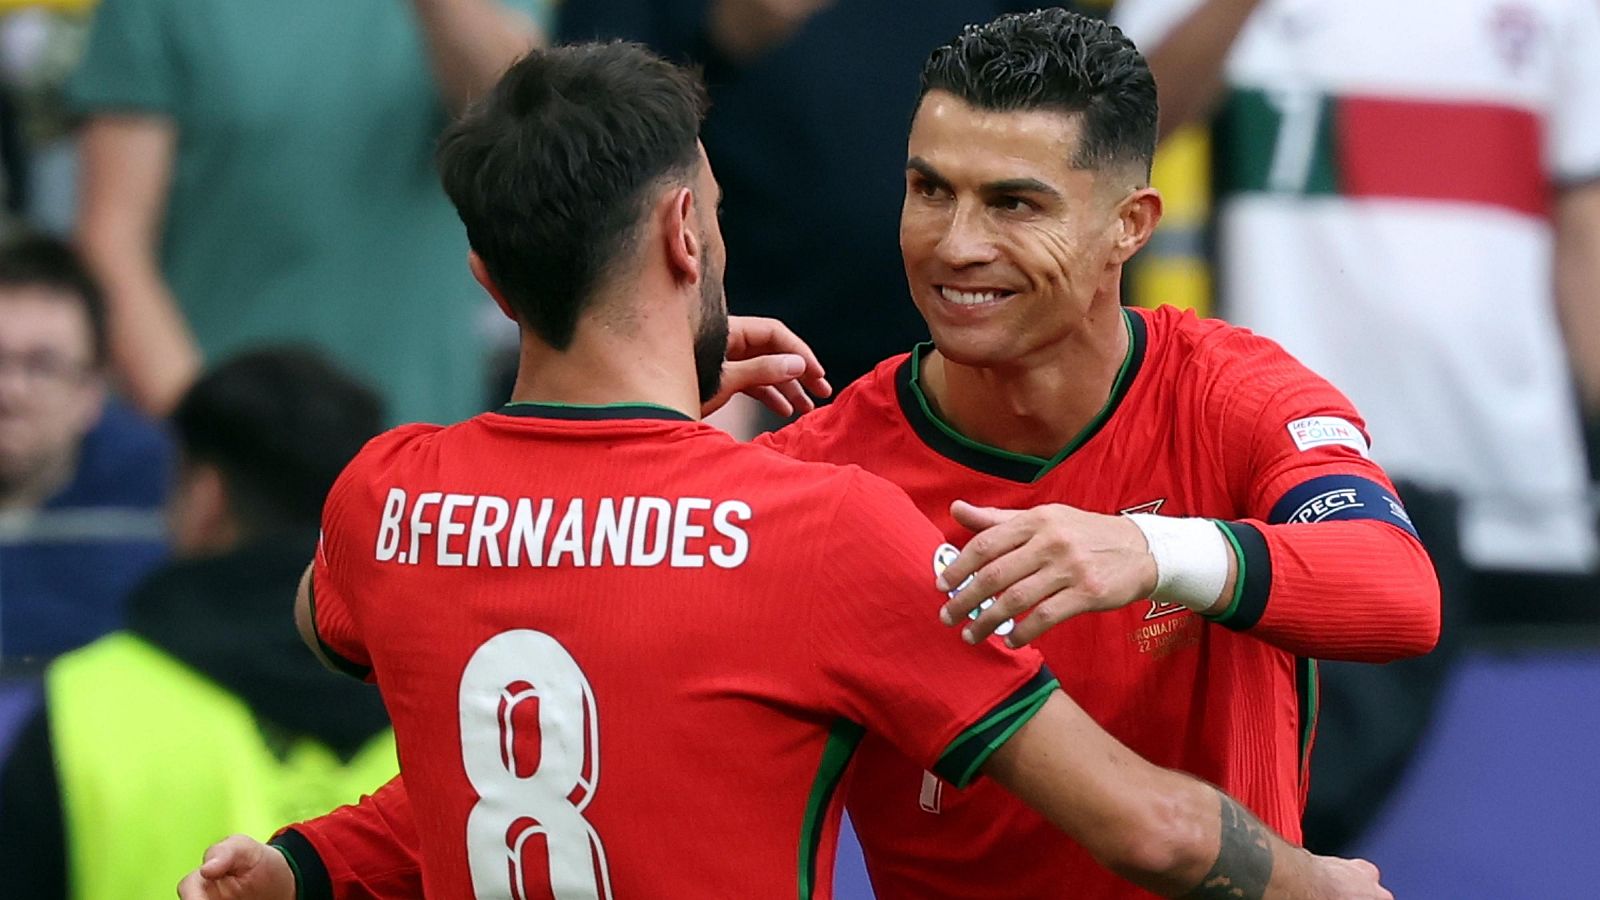 Cristiano Ronaldo regala el 0-3 a Bruno Fernandes tras un gran desmarque